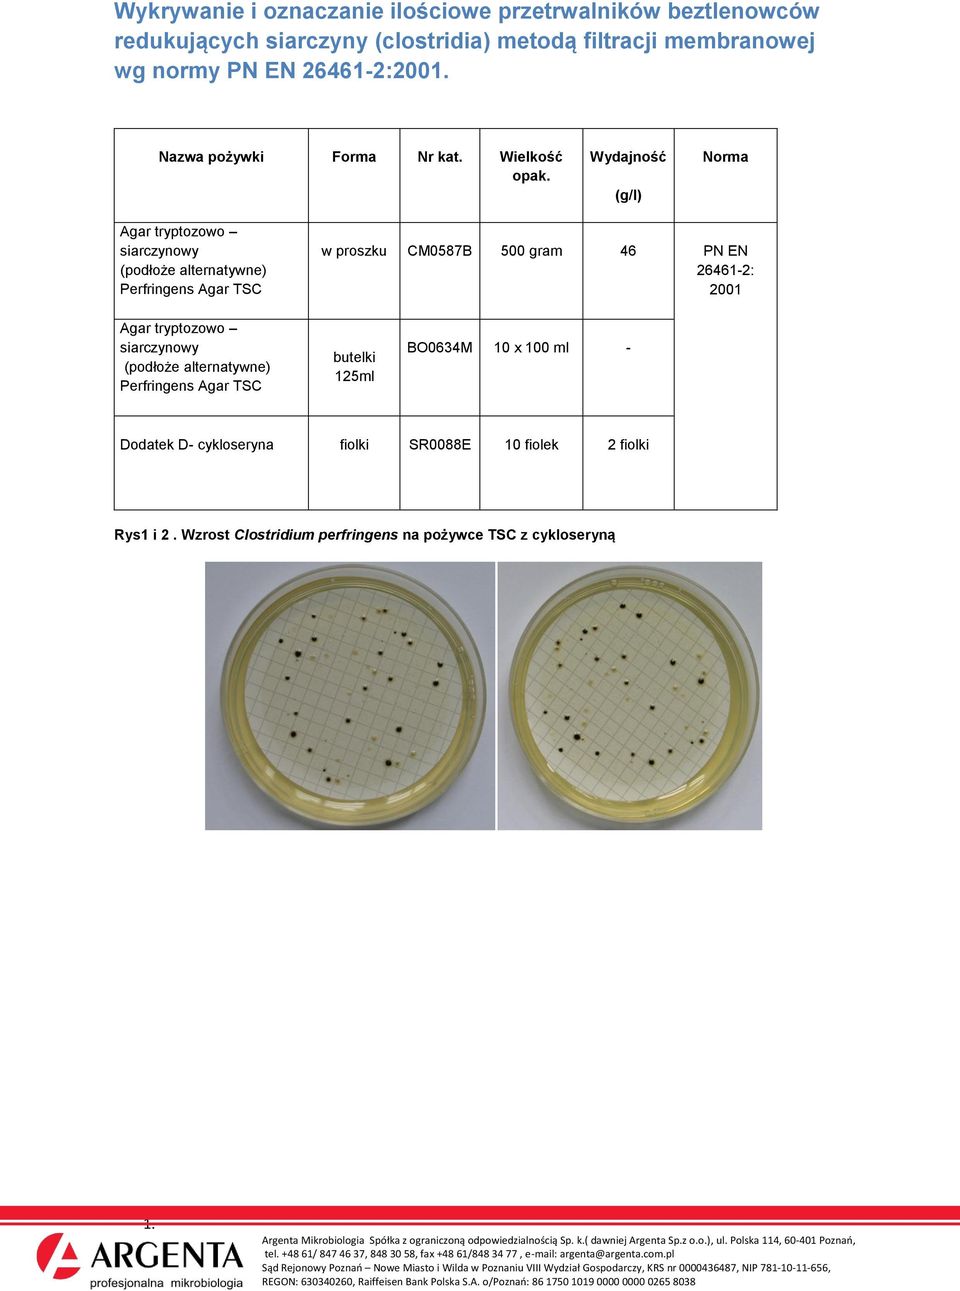 Wielkość Agar tryptozowo siarczynowy (podłoże alternatywne) Perfringens Agar TSC CM0587B 46 PN EN 26461-2: 2001 Agar tryptozowo siarczynowy (podłoże